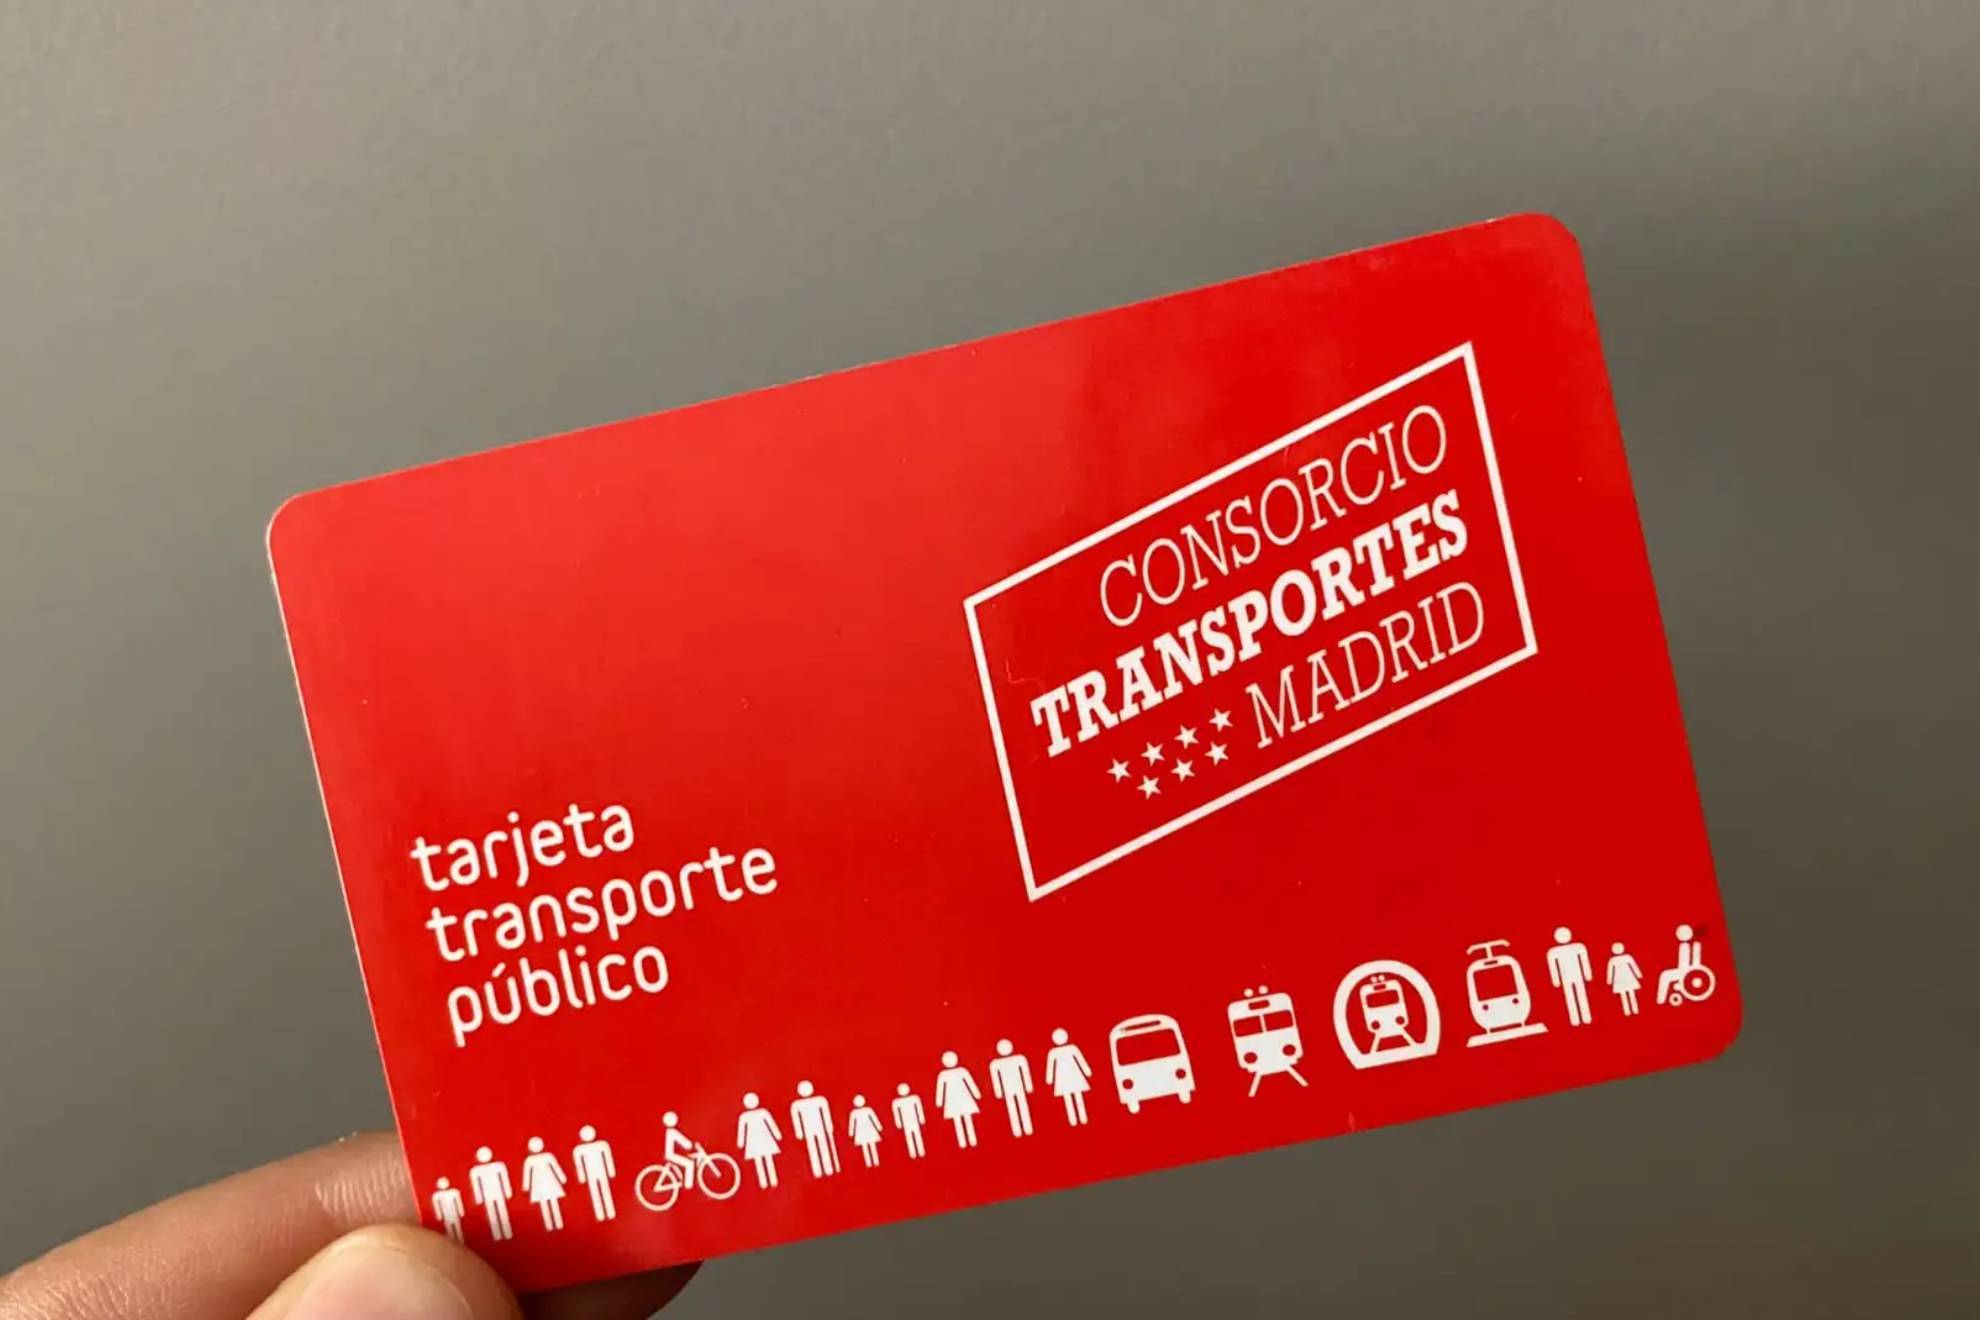 La Tarjeta de Transporte de Madrid ya se puede recargar desde iPhone con  esta app: cómo descargar e instalar | Marca